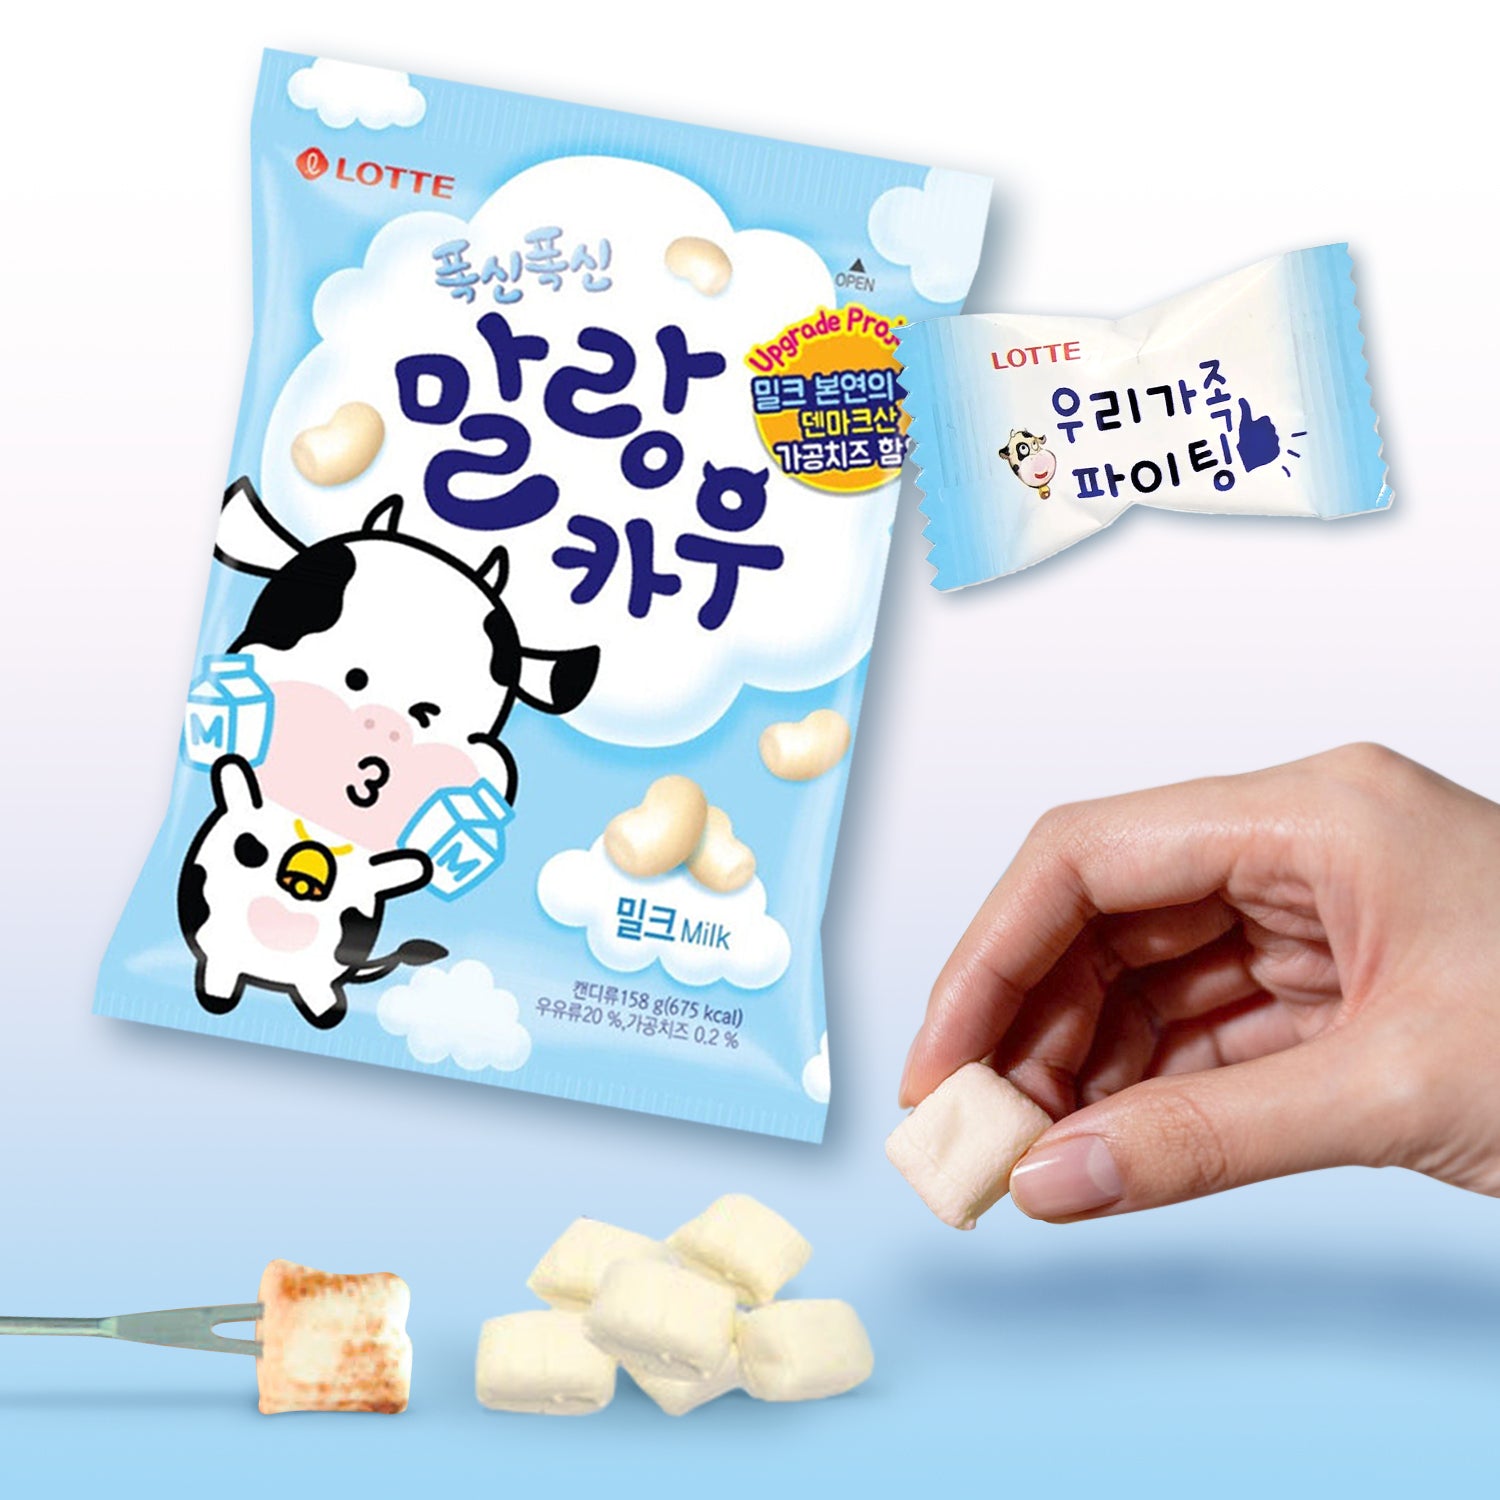 Lotte Malang Cow: Ein koreanischer Bonbon mit Erdbeer- oder Milchgeschmack